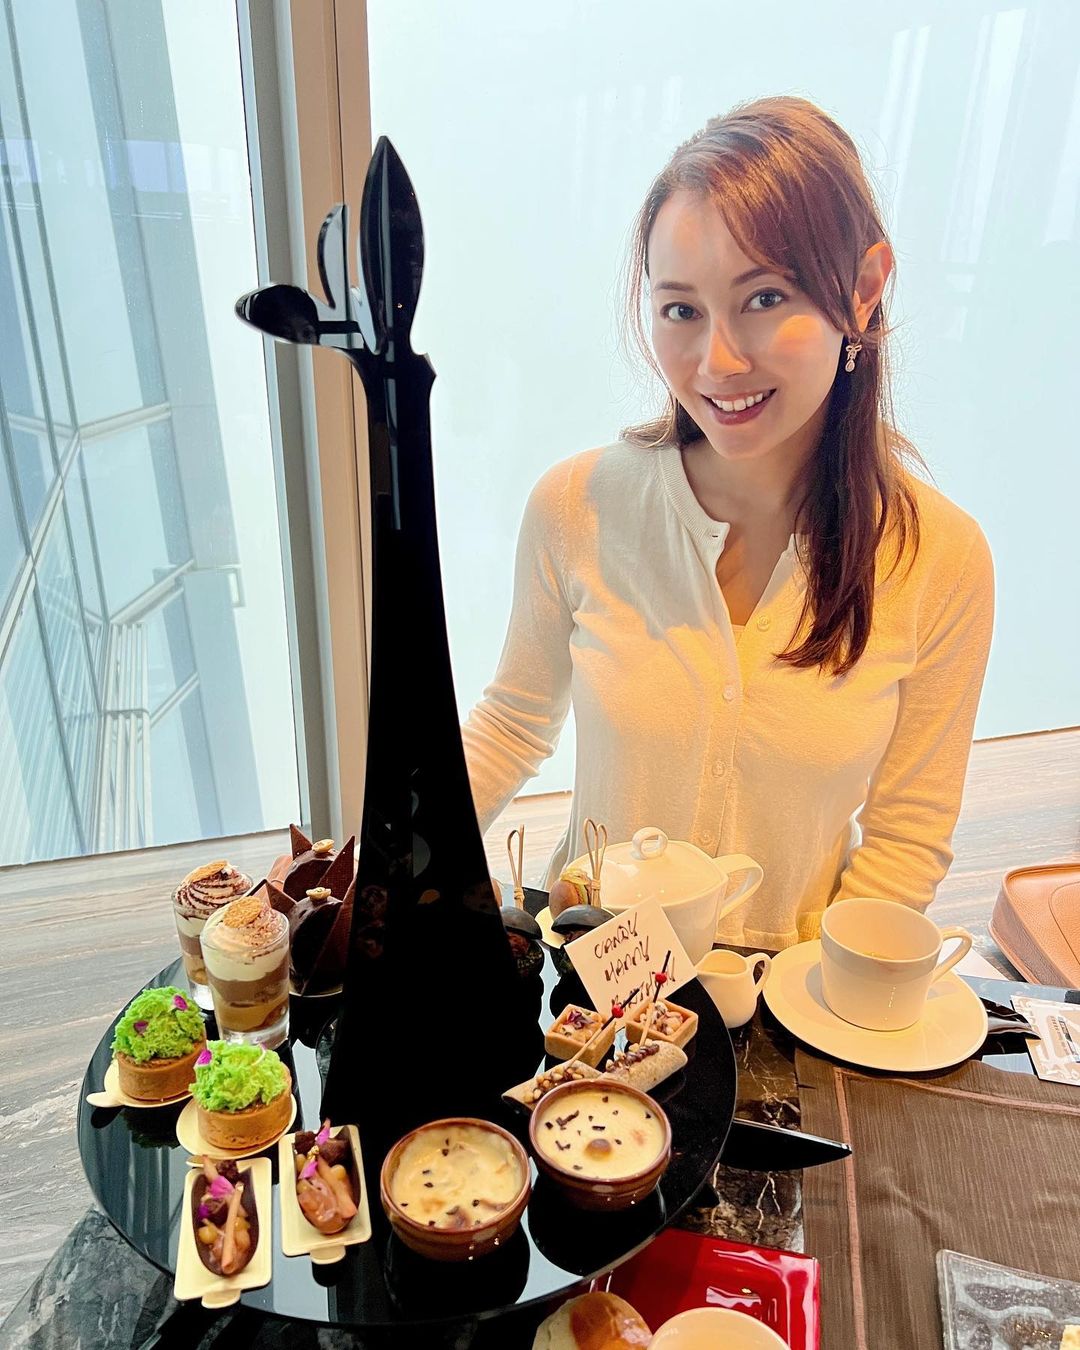 Hoa hậu ảnh Hồng Kông U40 vẫn như gái 18 nhờ chăm chỉ dùng một loại thực phẩm đặc biệt - Ảnh 2.